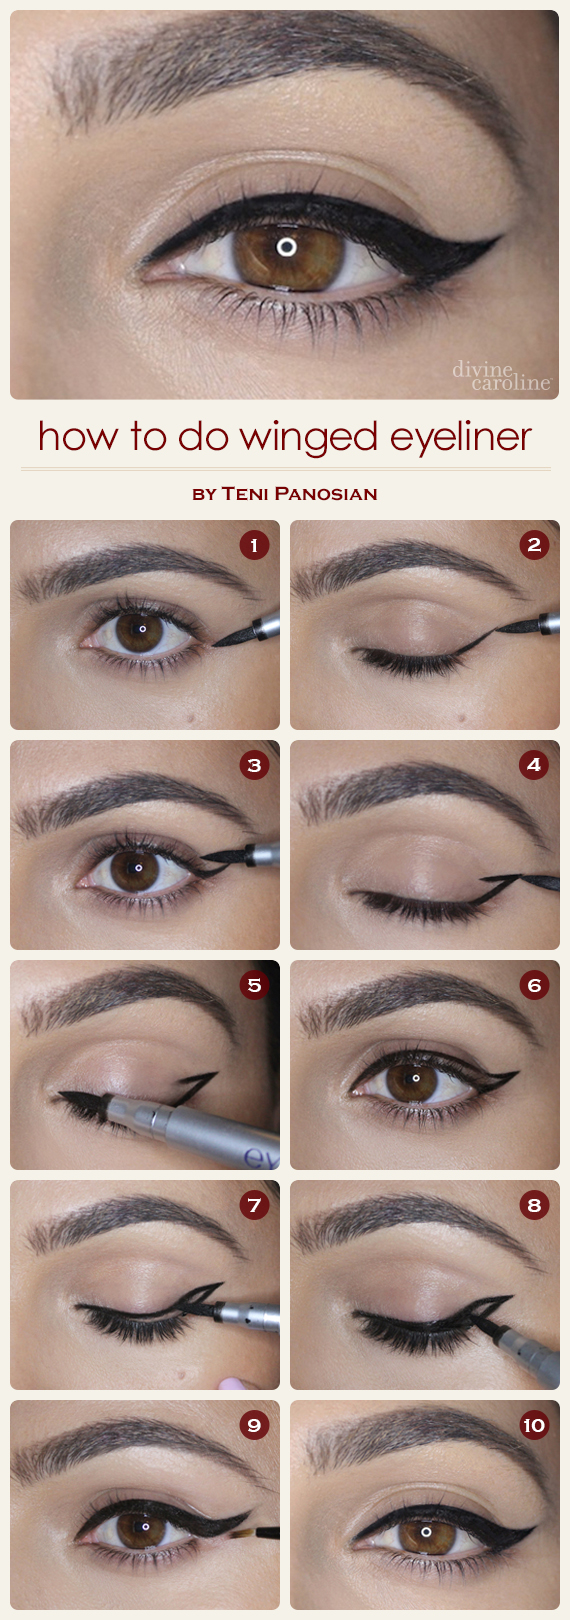 How to Eyeliner - Eyeko